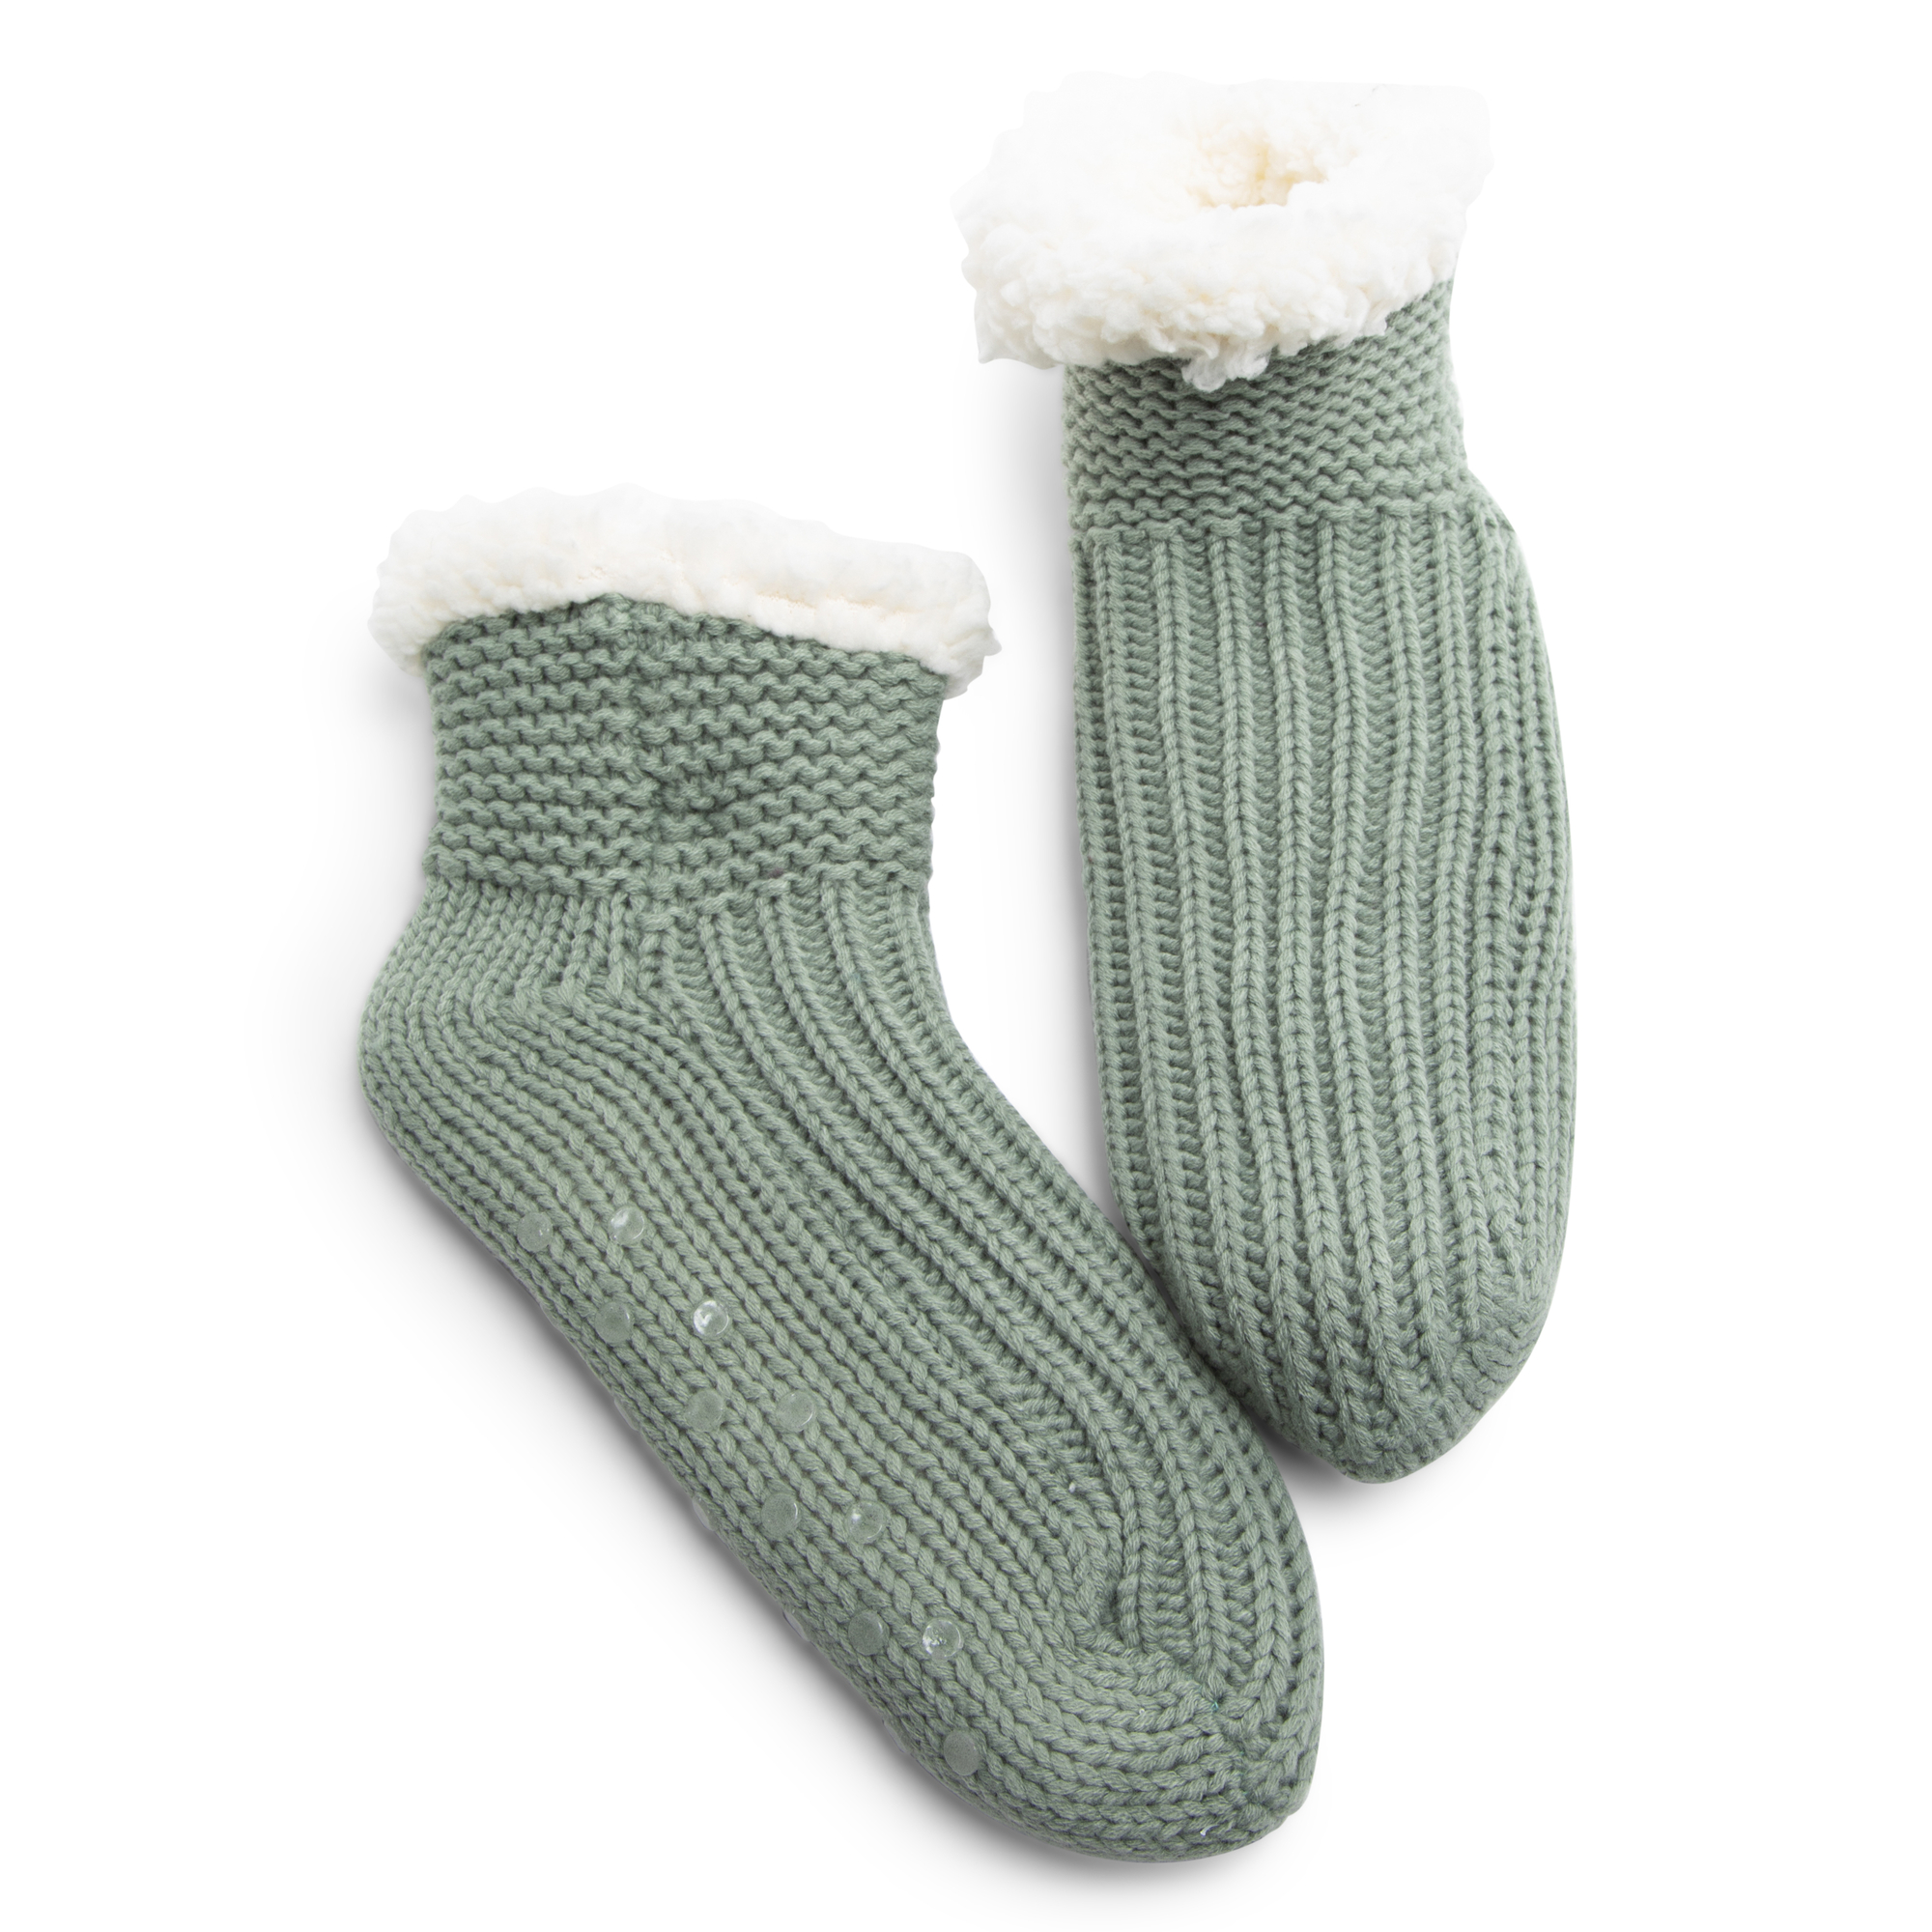 knit sherpa ankle bootie slipper socks